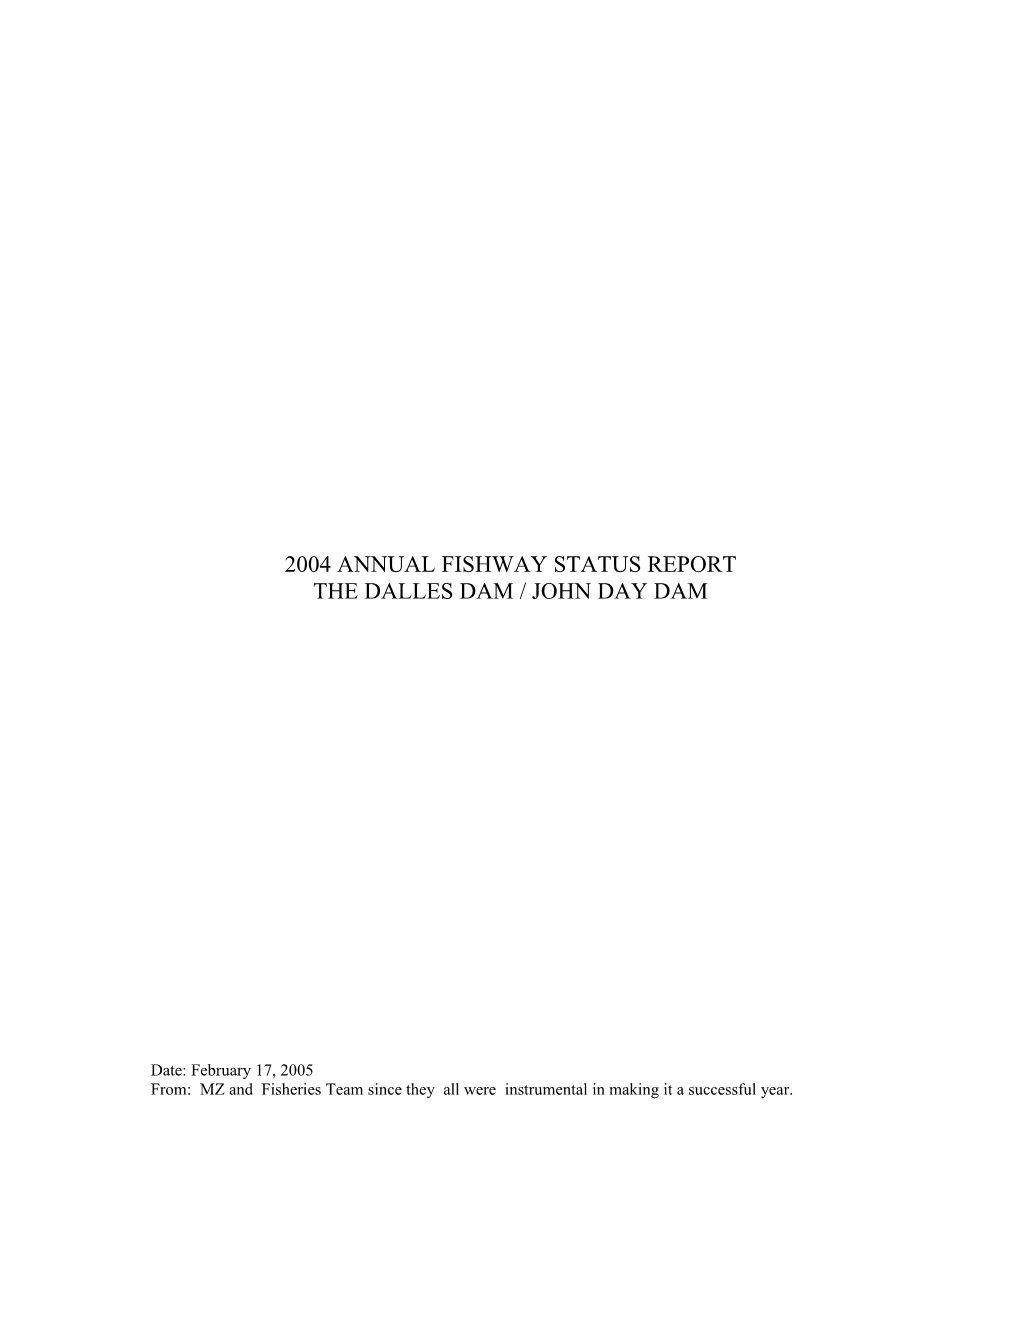 1998 Annual Fishway Status Report